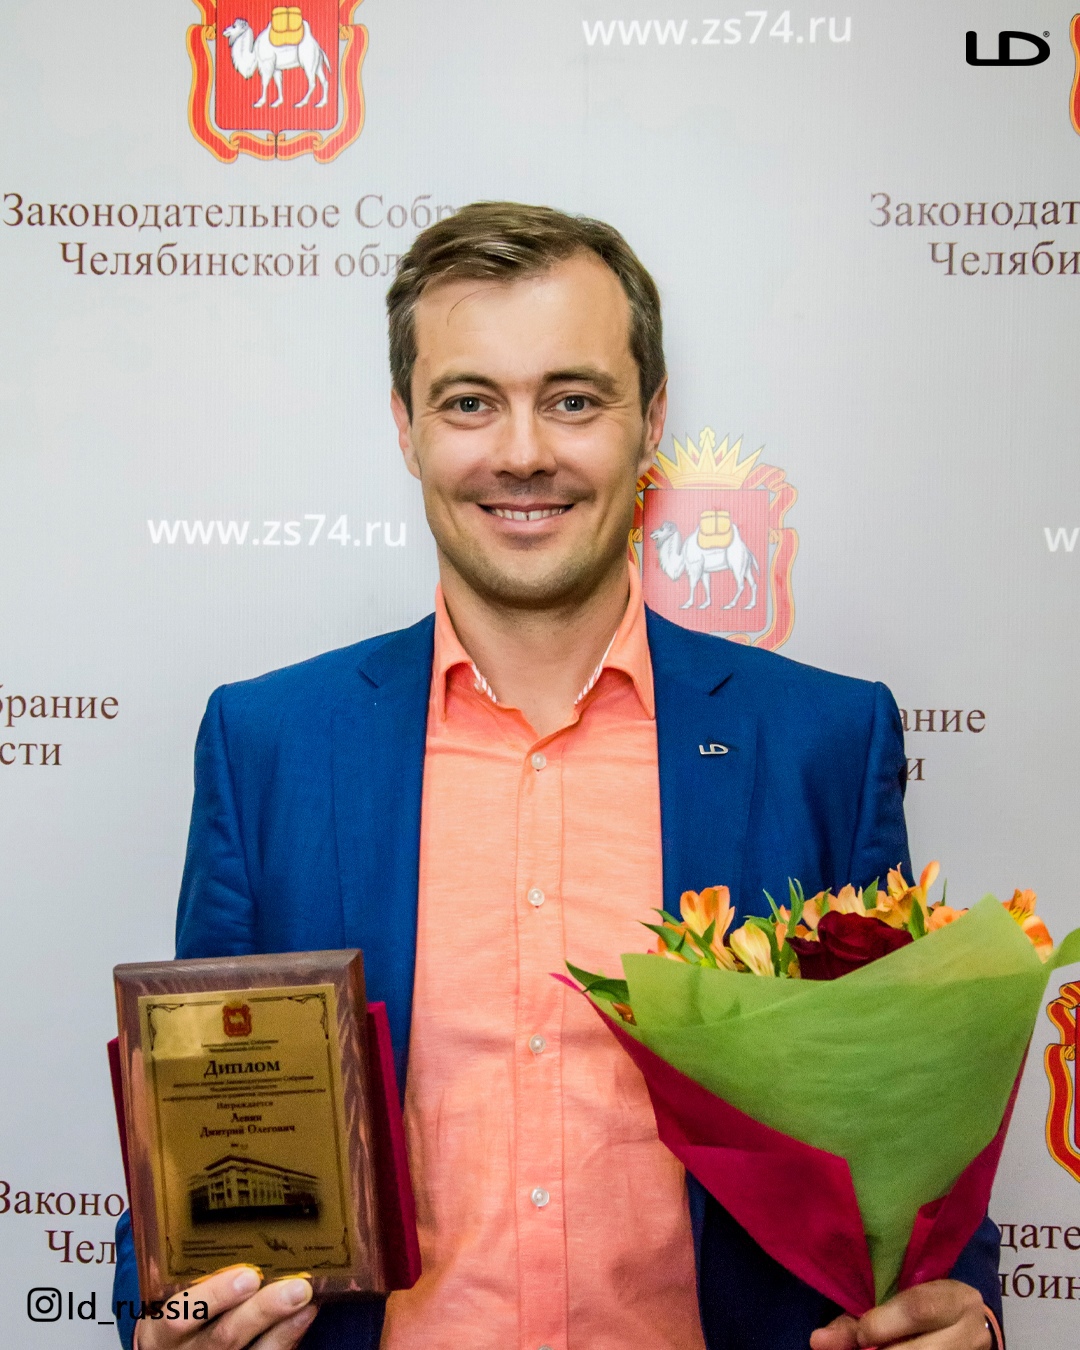 Генеральный директор LD стал лауреатом премии Законодательного Собрания Челябинской области